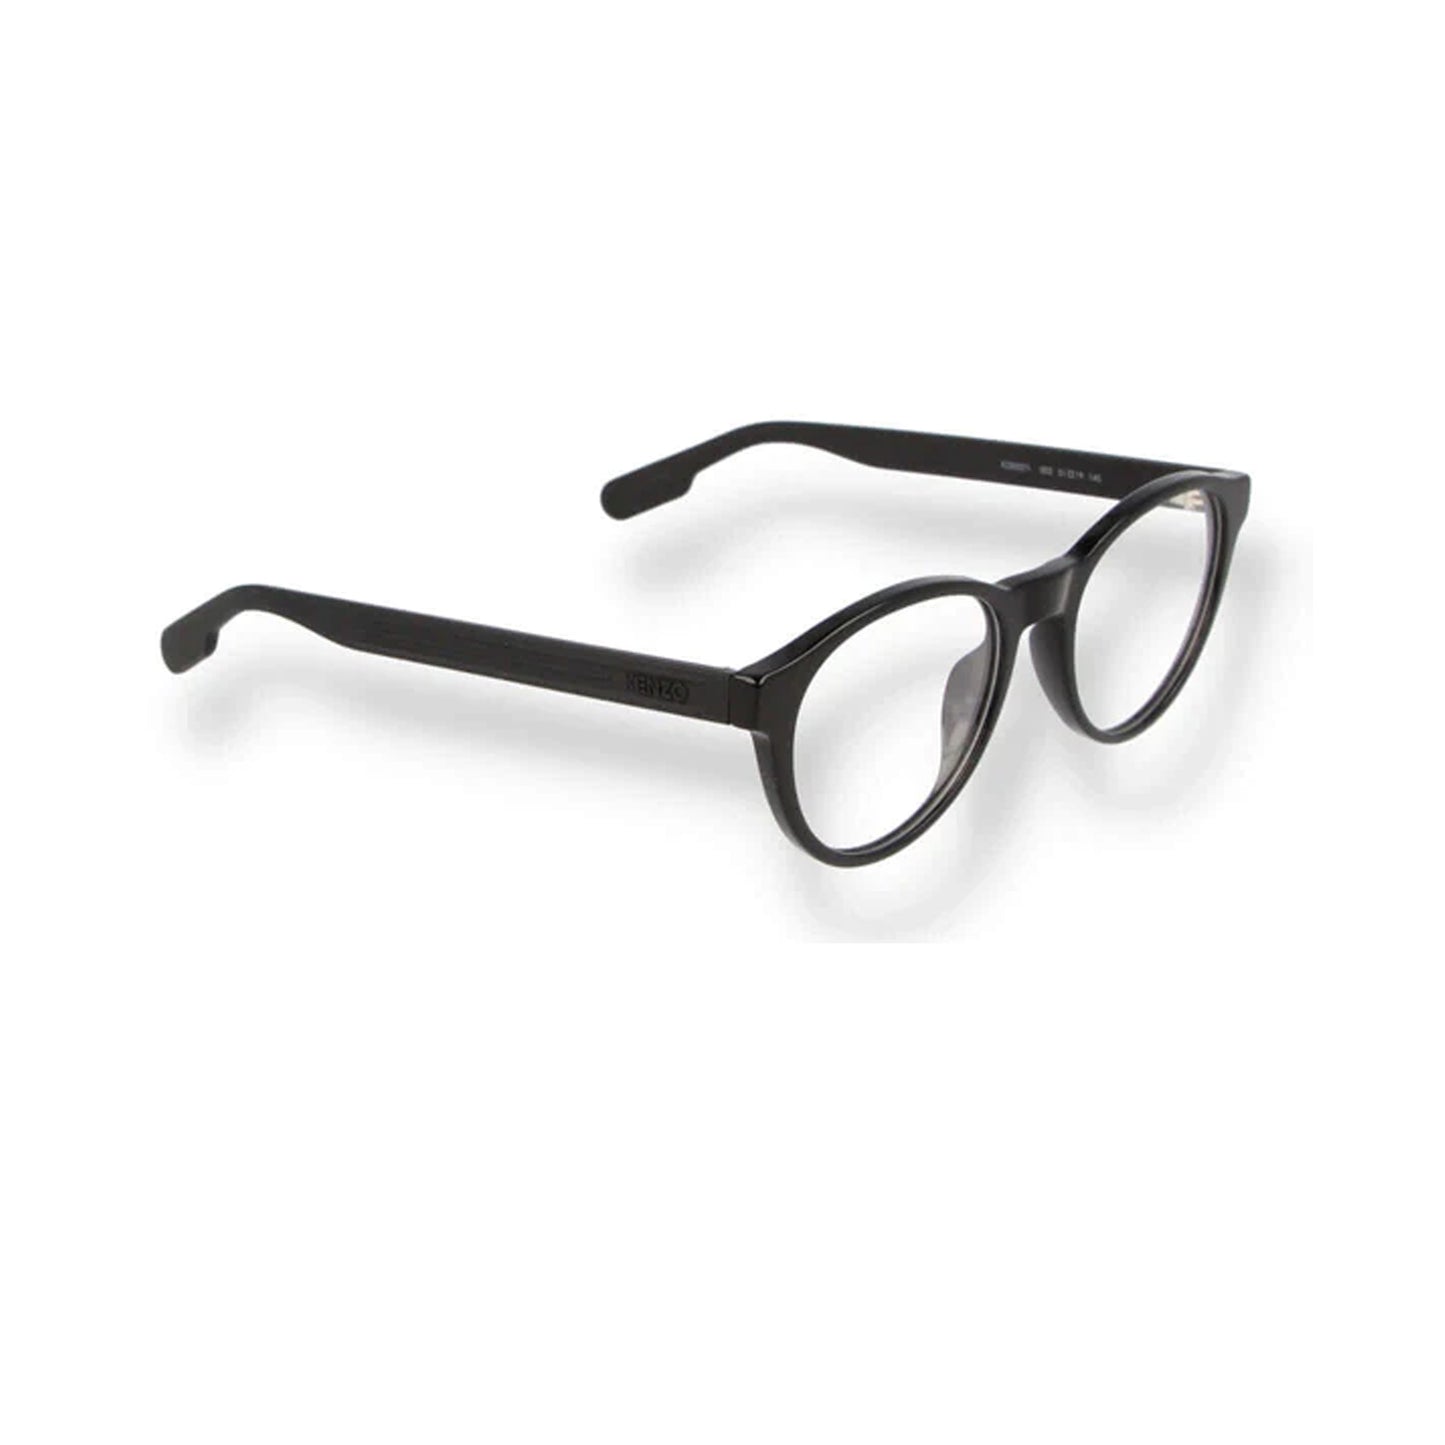 Kenzo Black Round Acetate Full Rim Eyeglasses KZ50021I-Y23